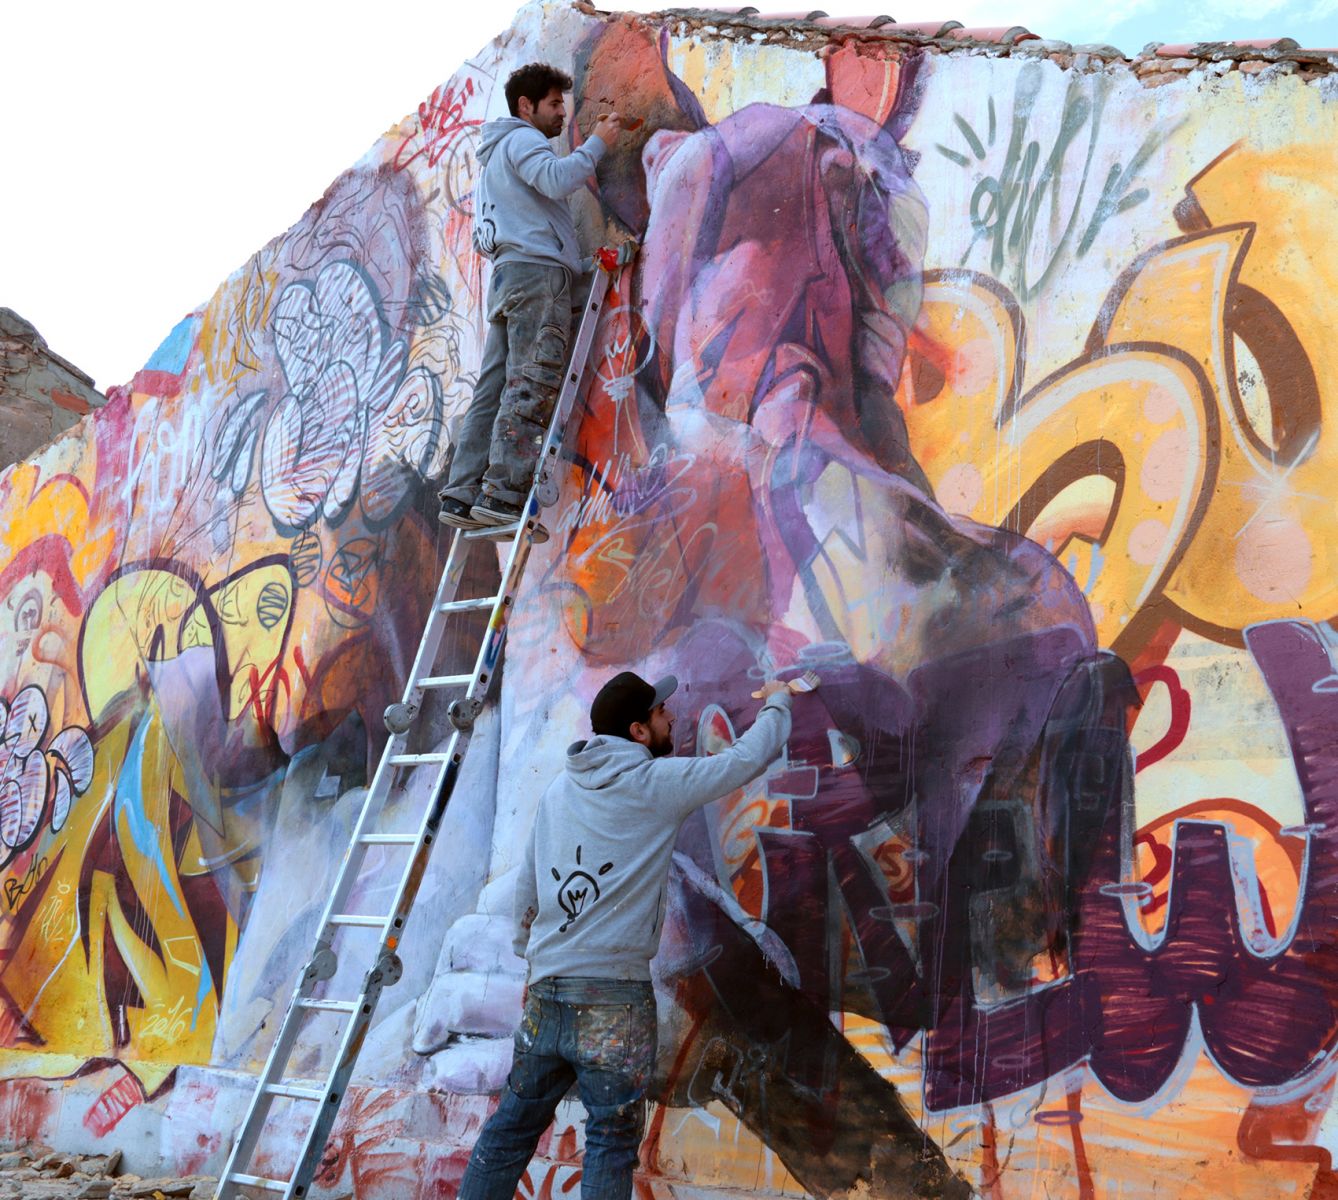 Tranh sơn tường - Graffiti: Nghệ thuật hay phi nghệ thuật?